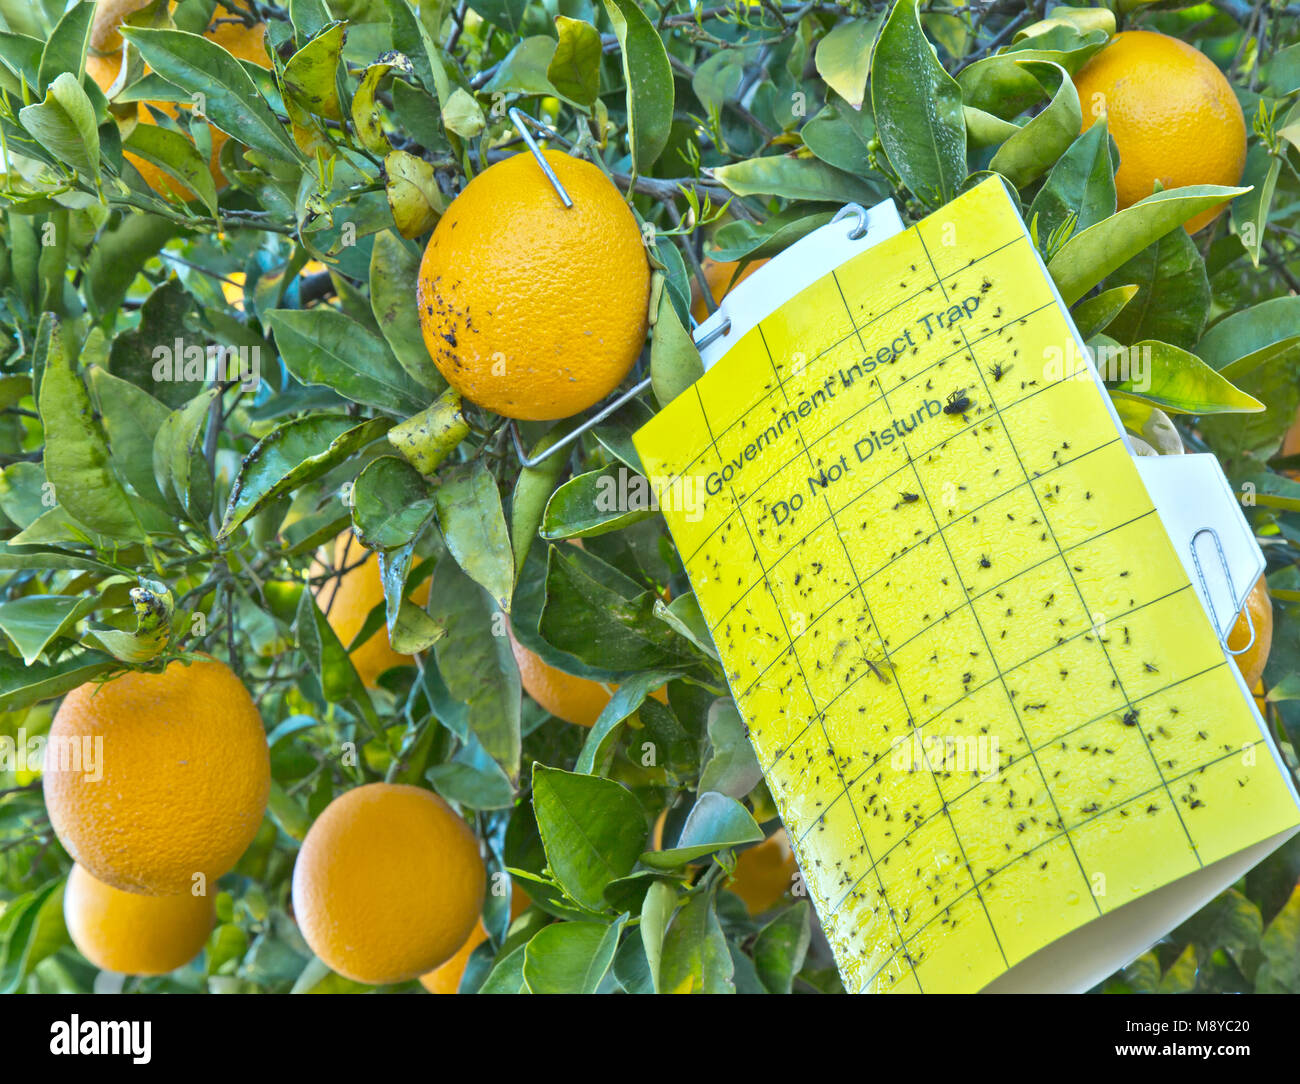 Piège à insectes agricoles 'ne pas déranger', 'Les Oranges Valencia nucellaire Cutter Citrus sinensis'. Banque D'Images